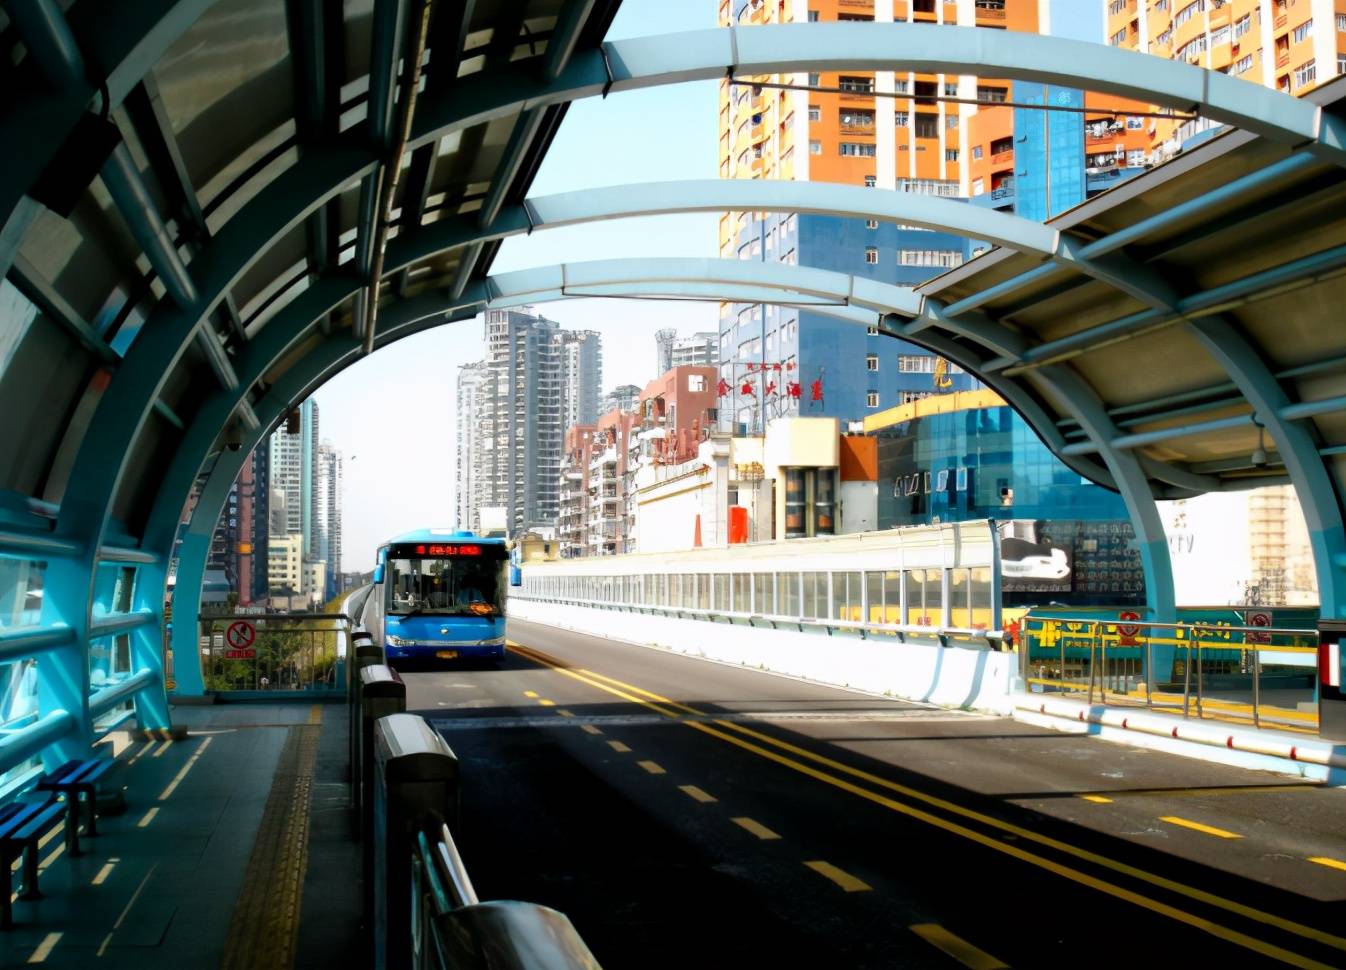 什么是BRT专用车道?不小心驶入会有什么